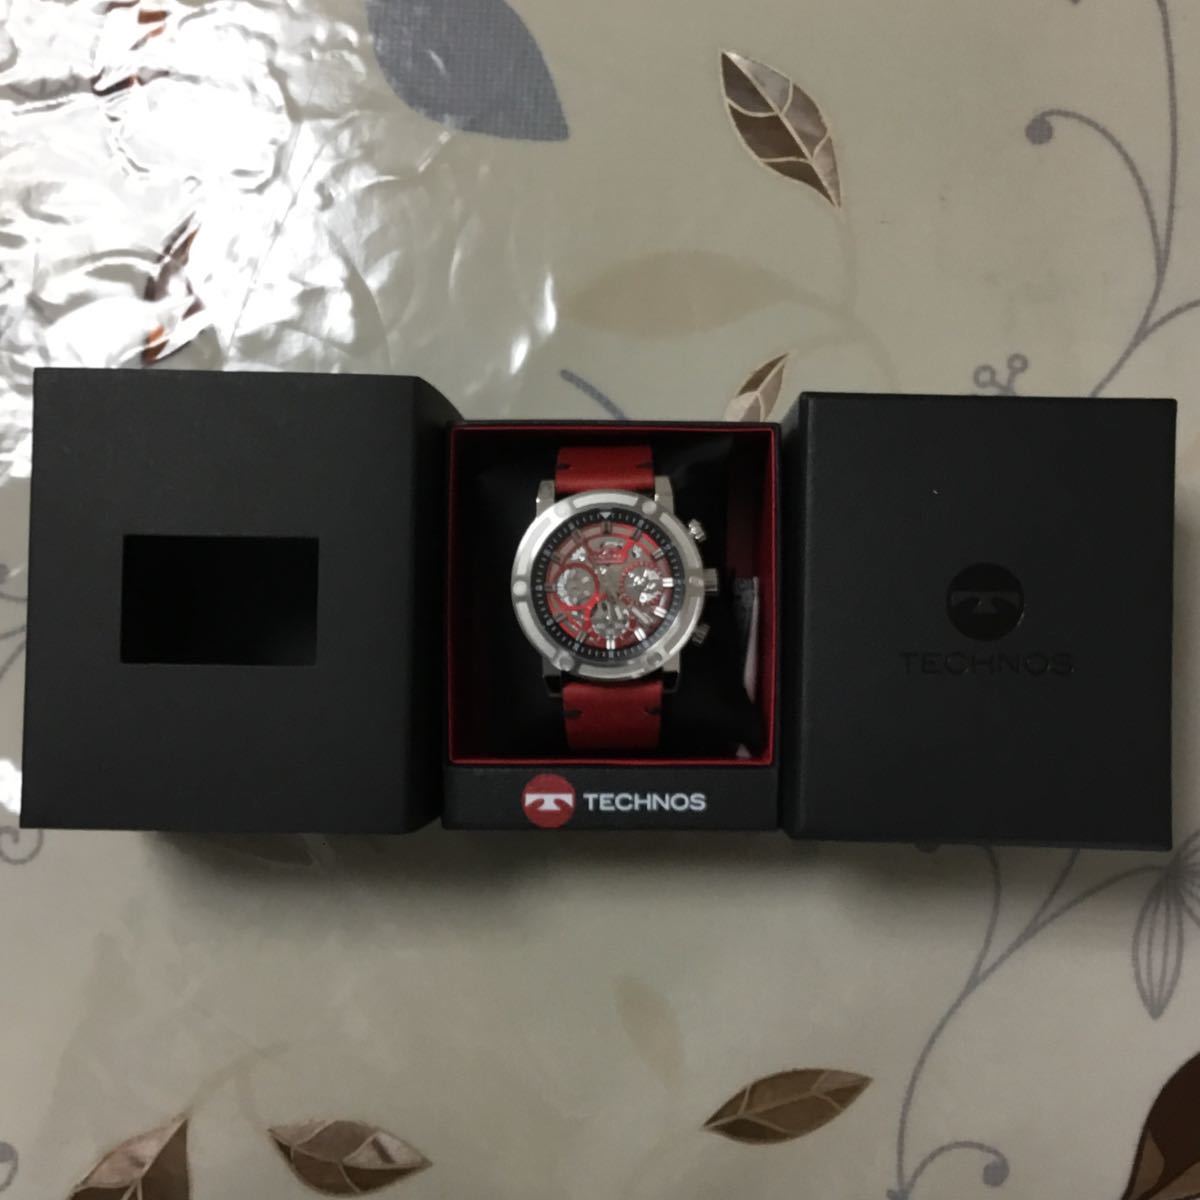 新品 TECHNOS テクノス 正規品 腕時計 レザーベルト クロノグラフ クォーツ アナログ腕時計 多機能腕時計 ディスク